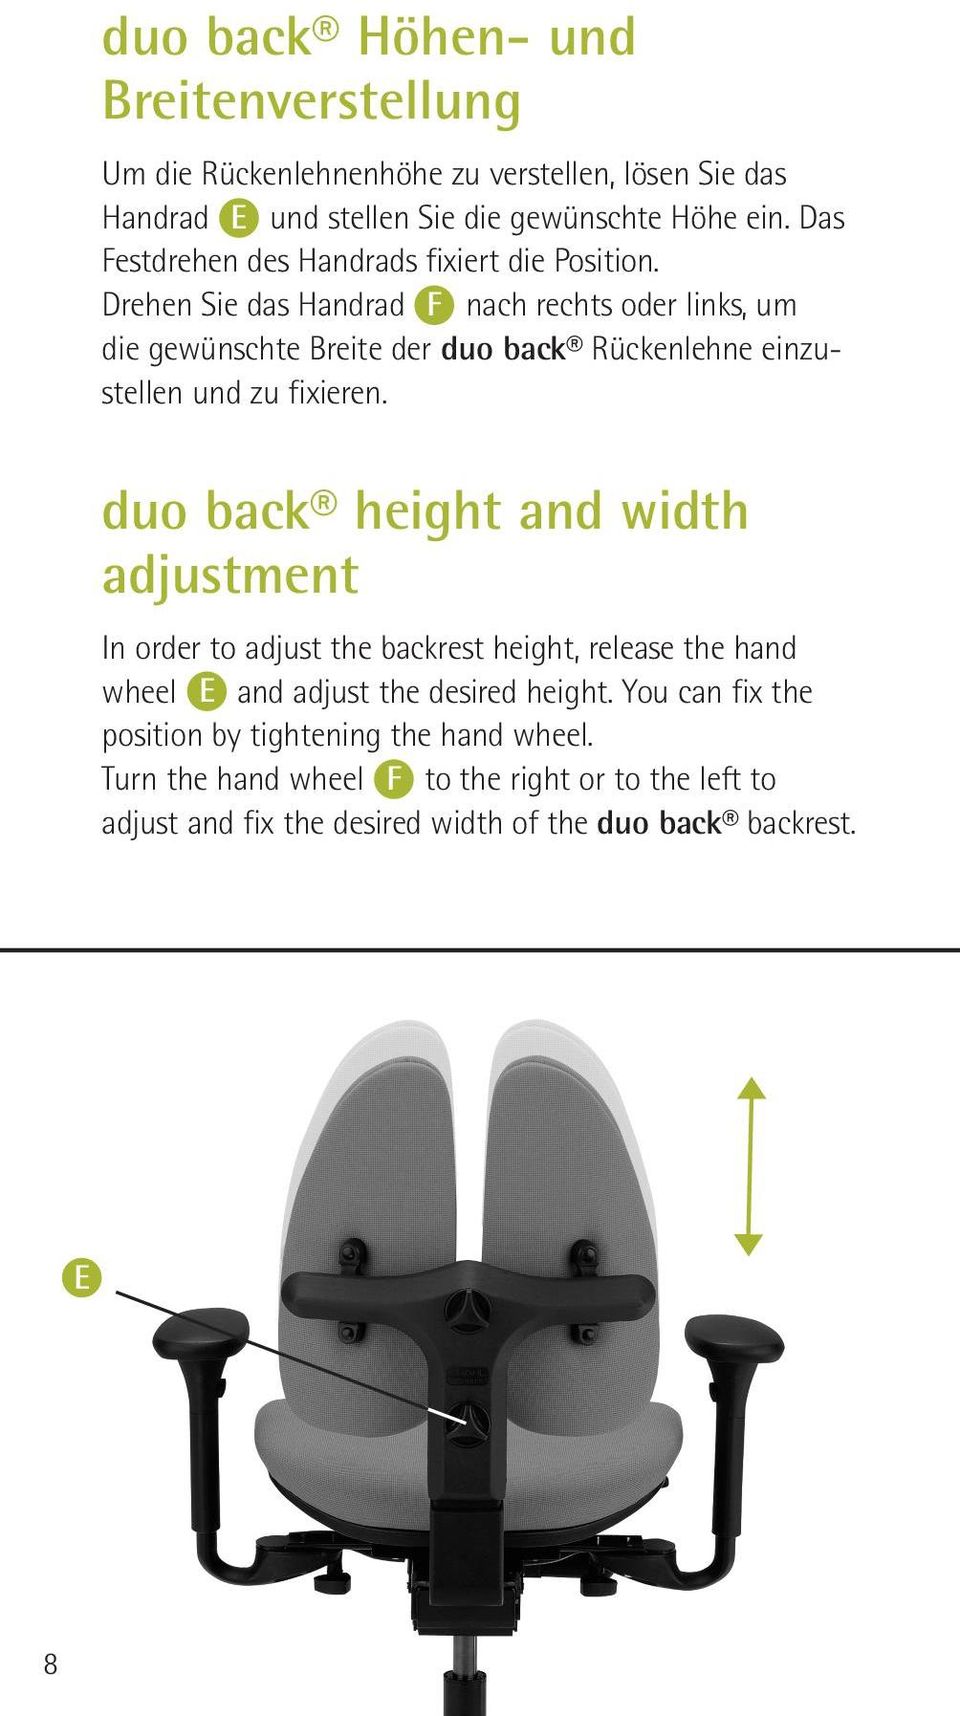 Drehen Sie das Handrad F nach rechts oder links, um die gewünschte Breite der duo back Rückenlehne einzustellen und zu fixieren.